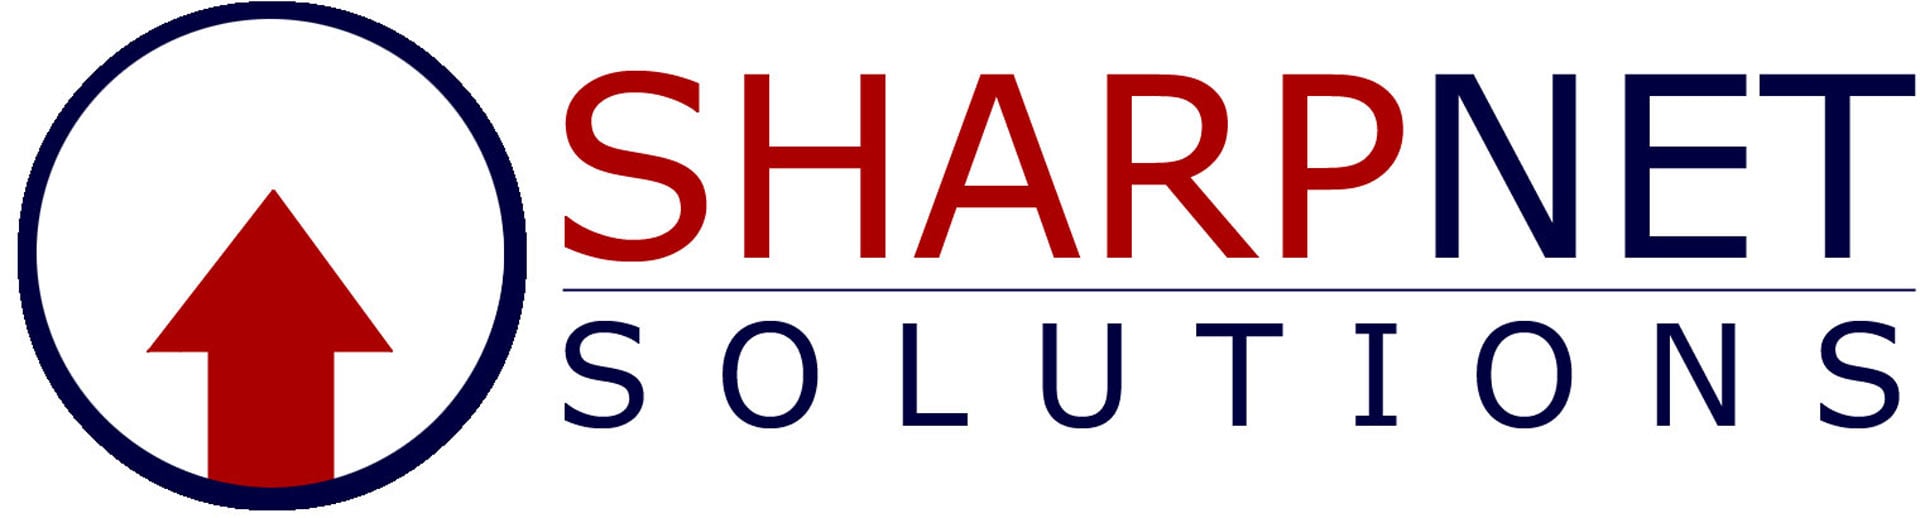 Best Local SEO Business Logo: SharpNet